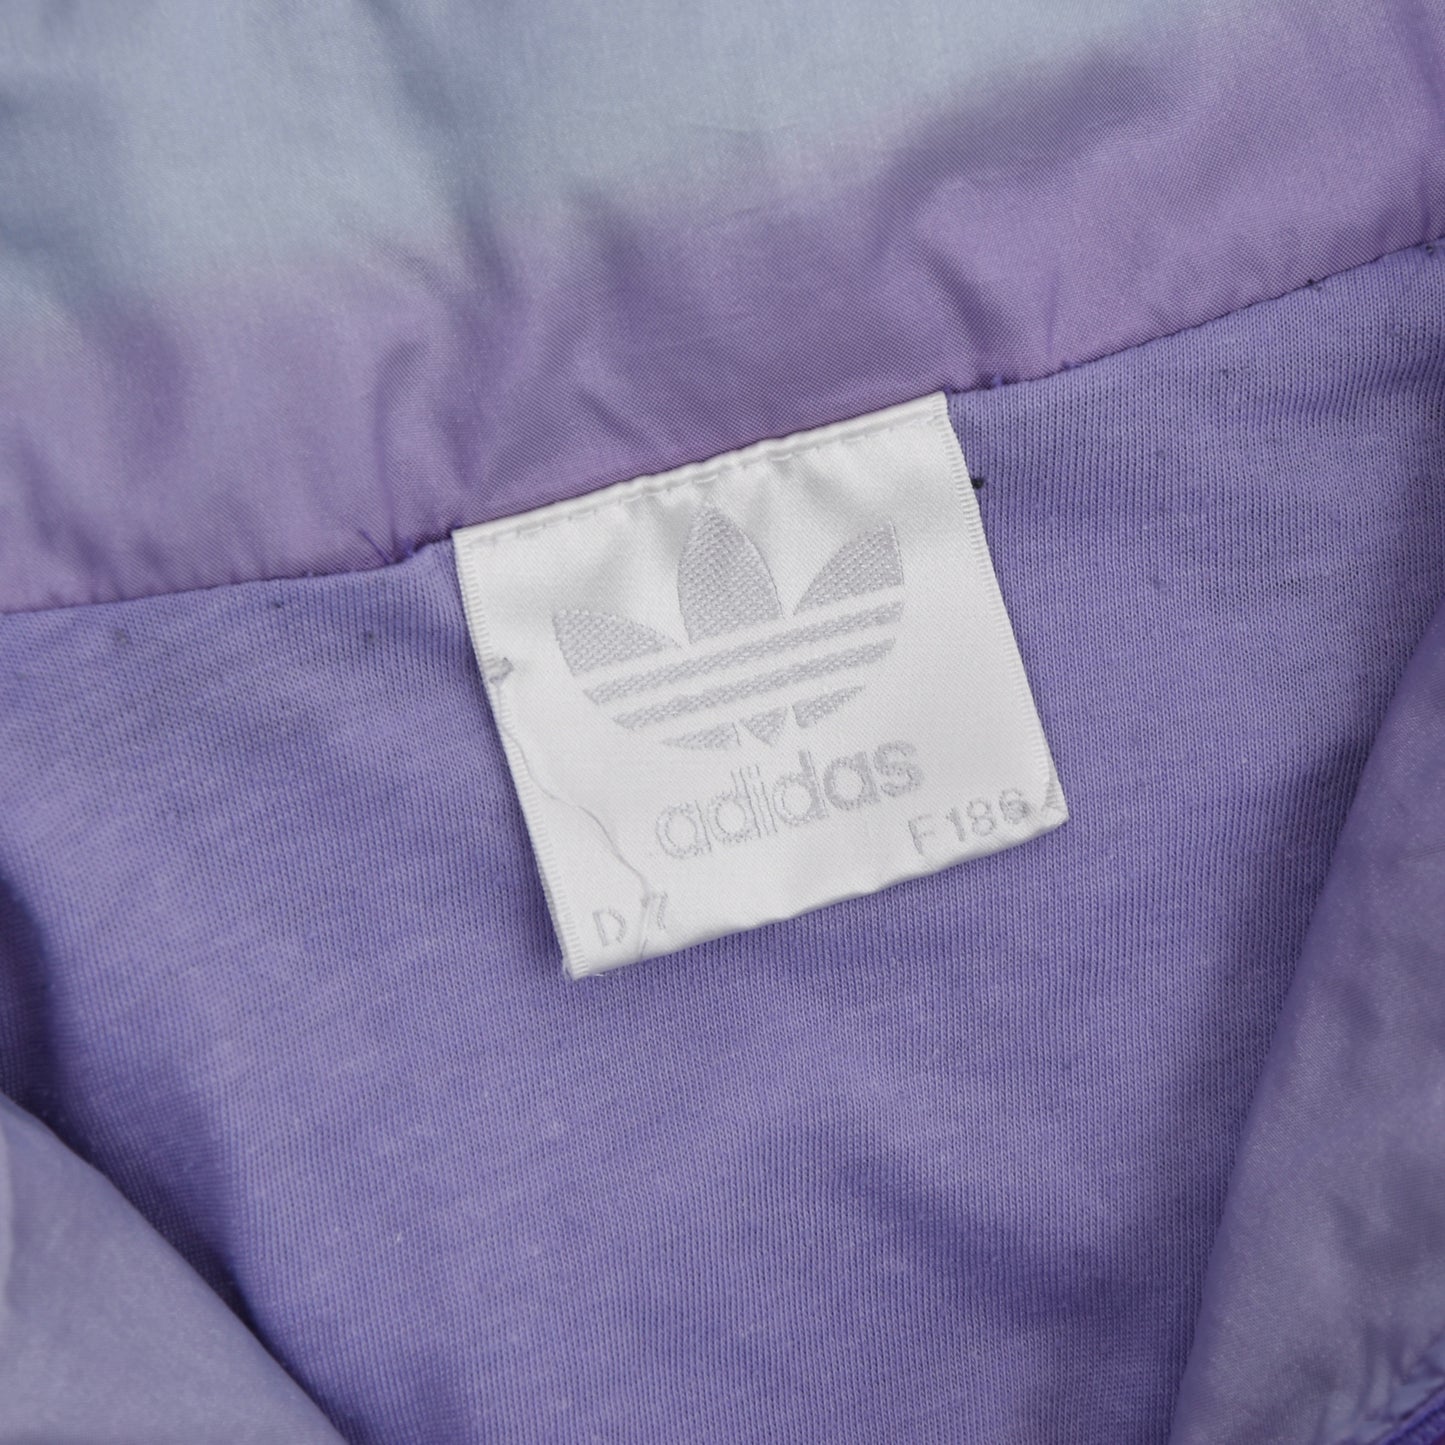 Vintage '90s Adidas Nylon Jacket - Black/Teal/Purple